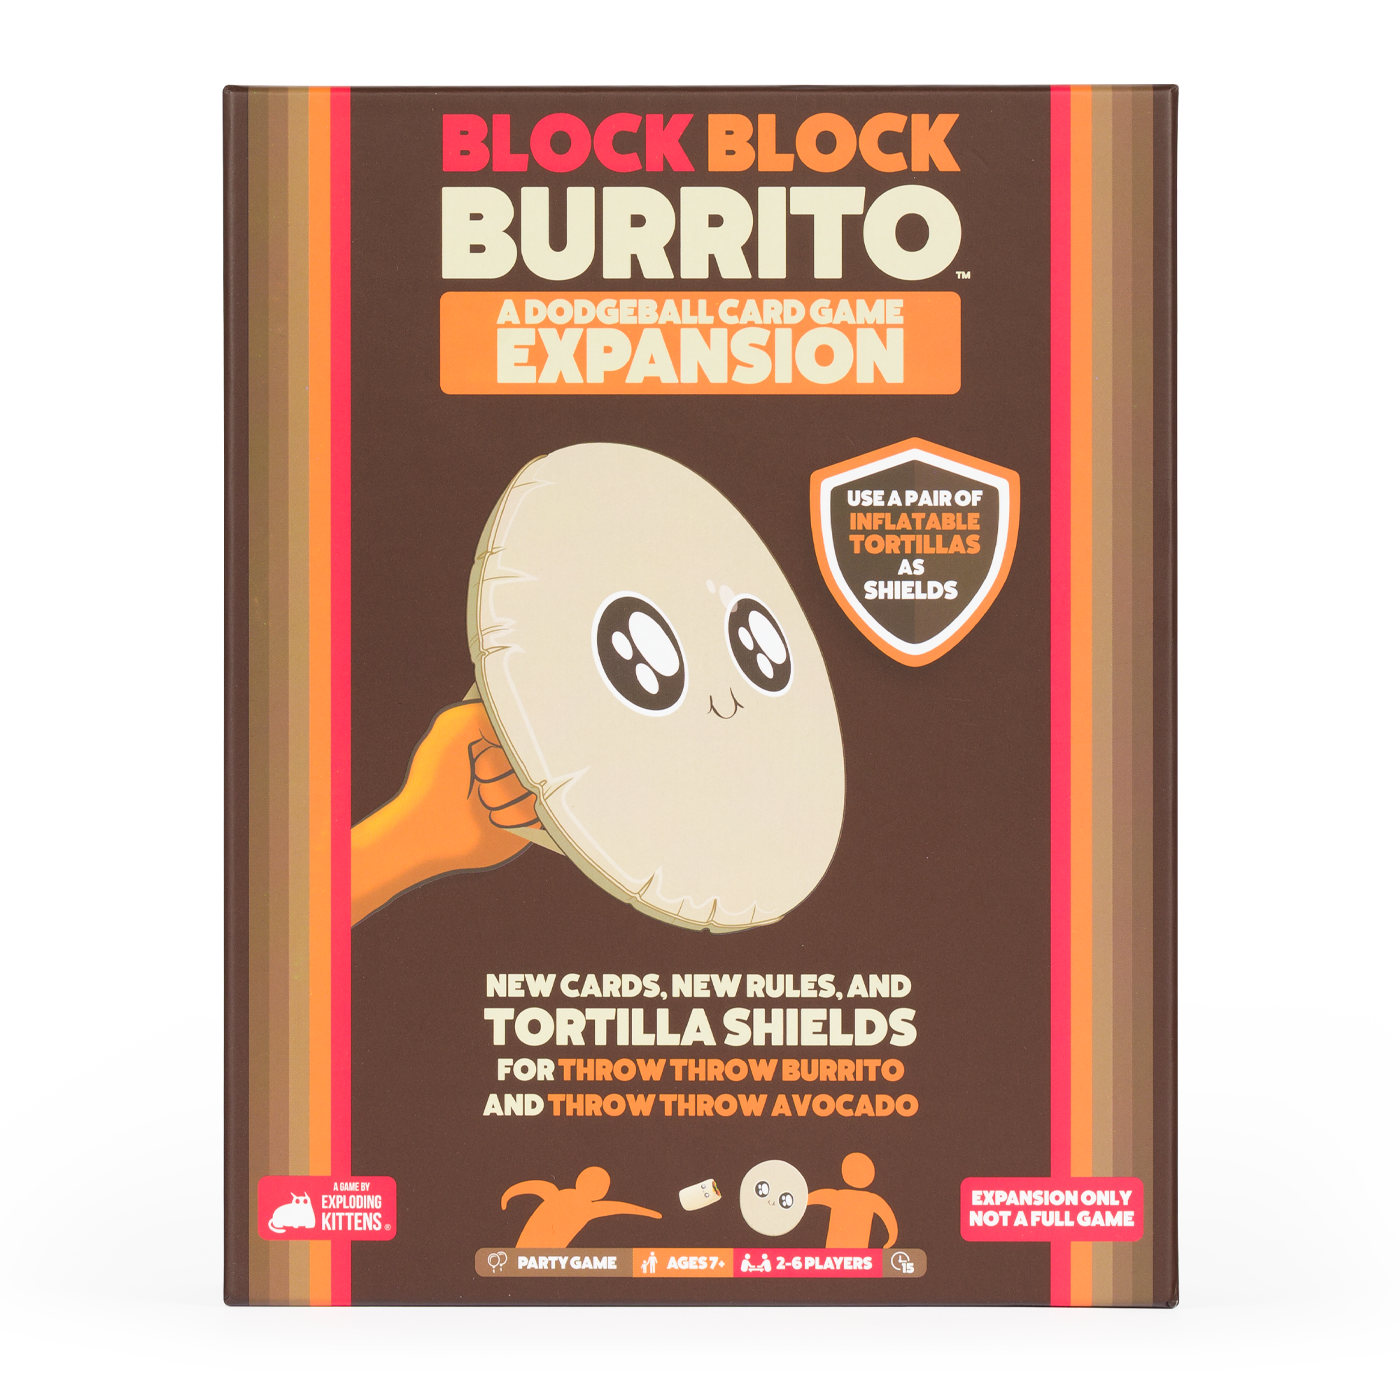 Block Block Burrito